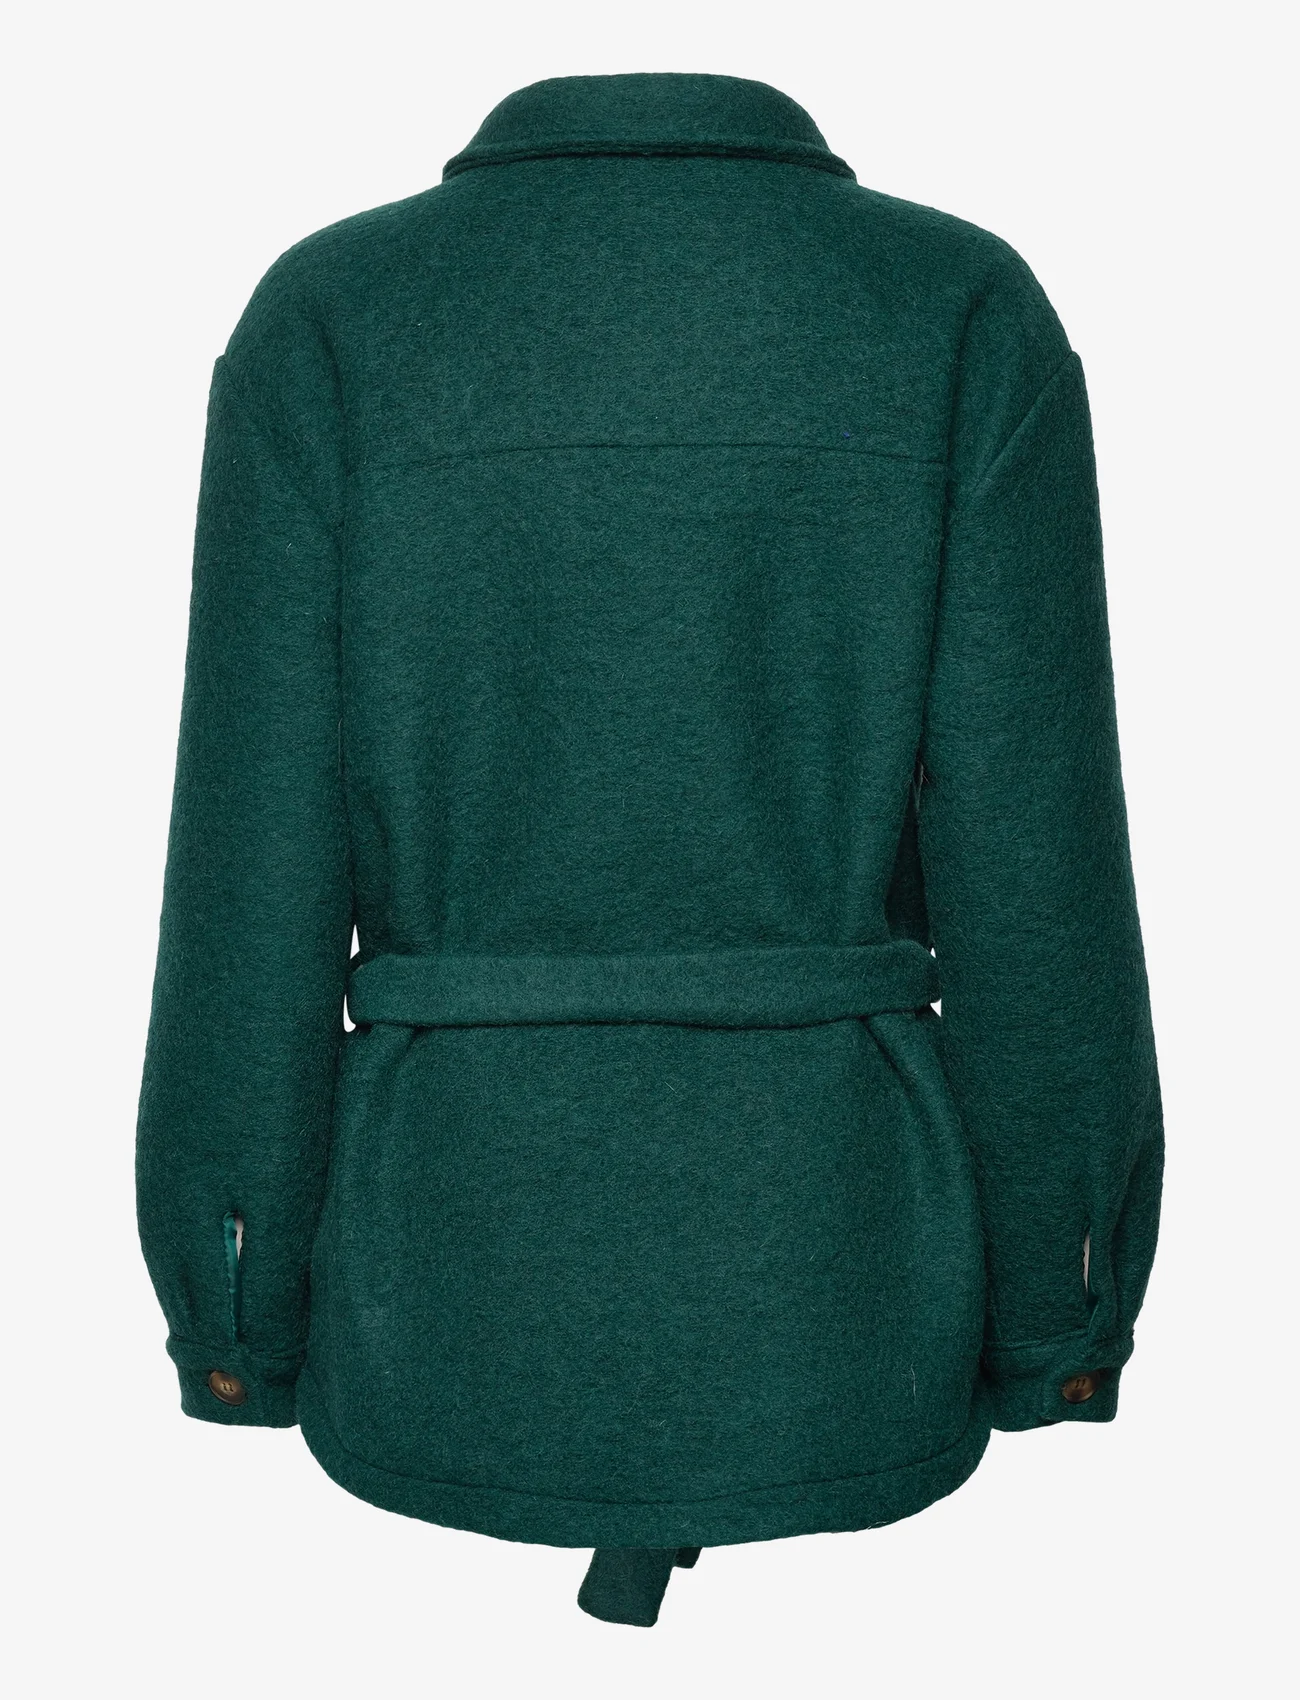 Noella - Koi Shirt Jacket - vinterjakker - bottle green - 1